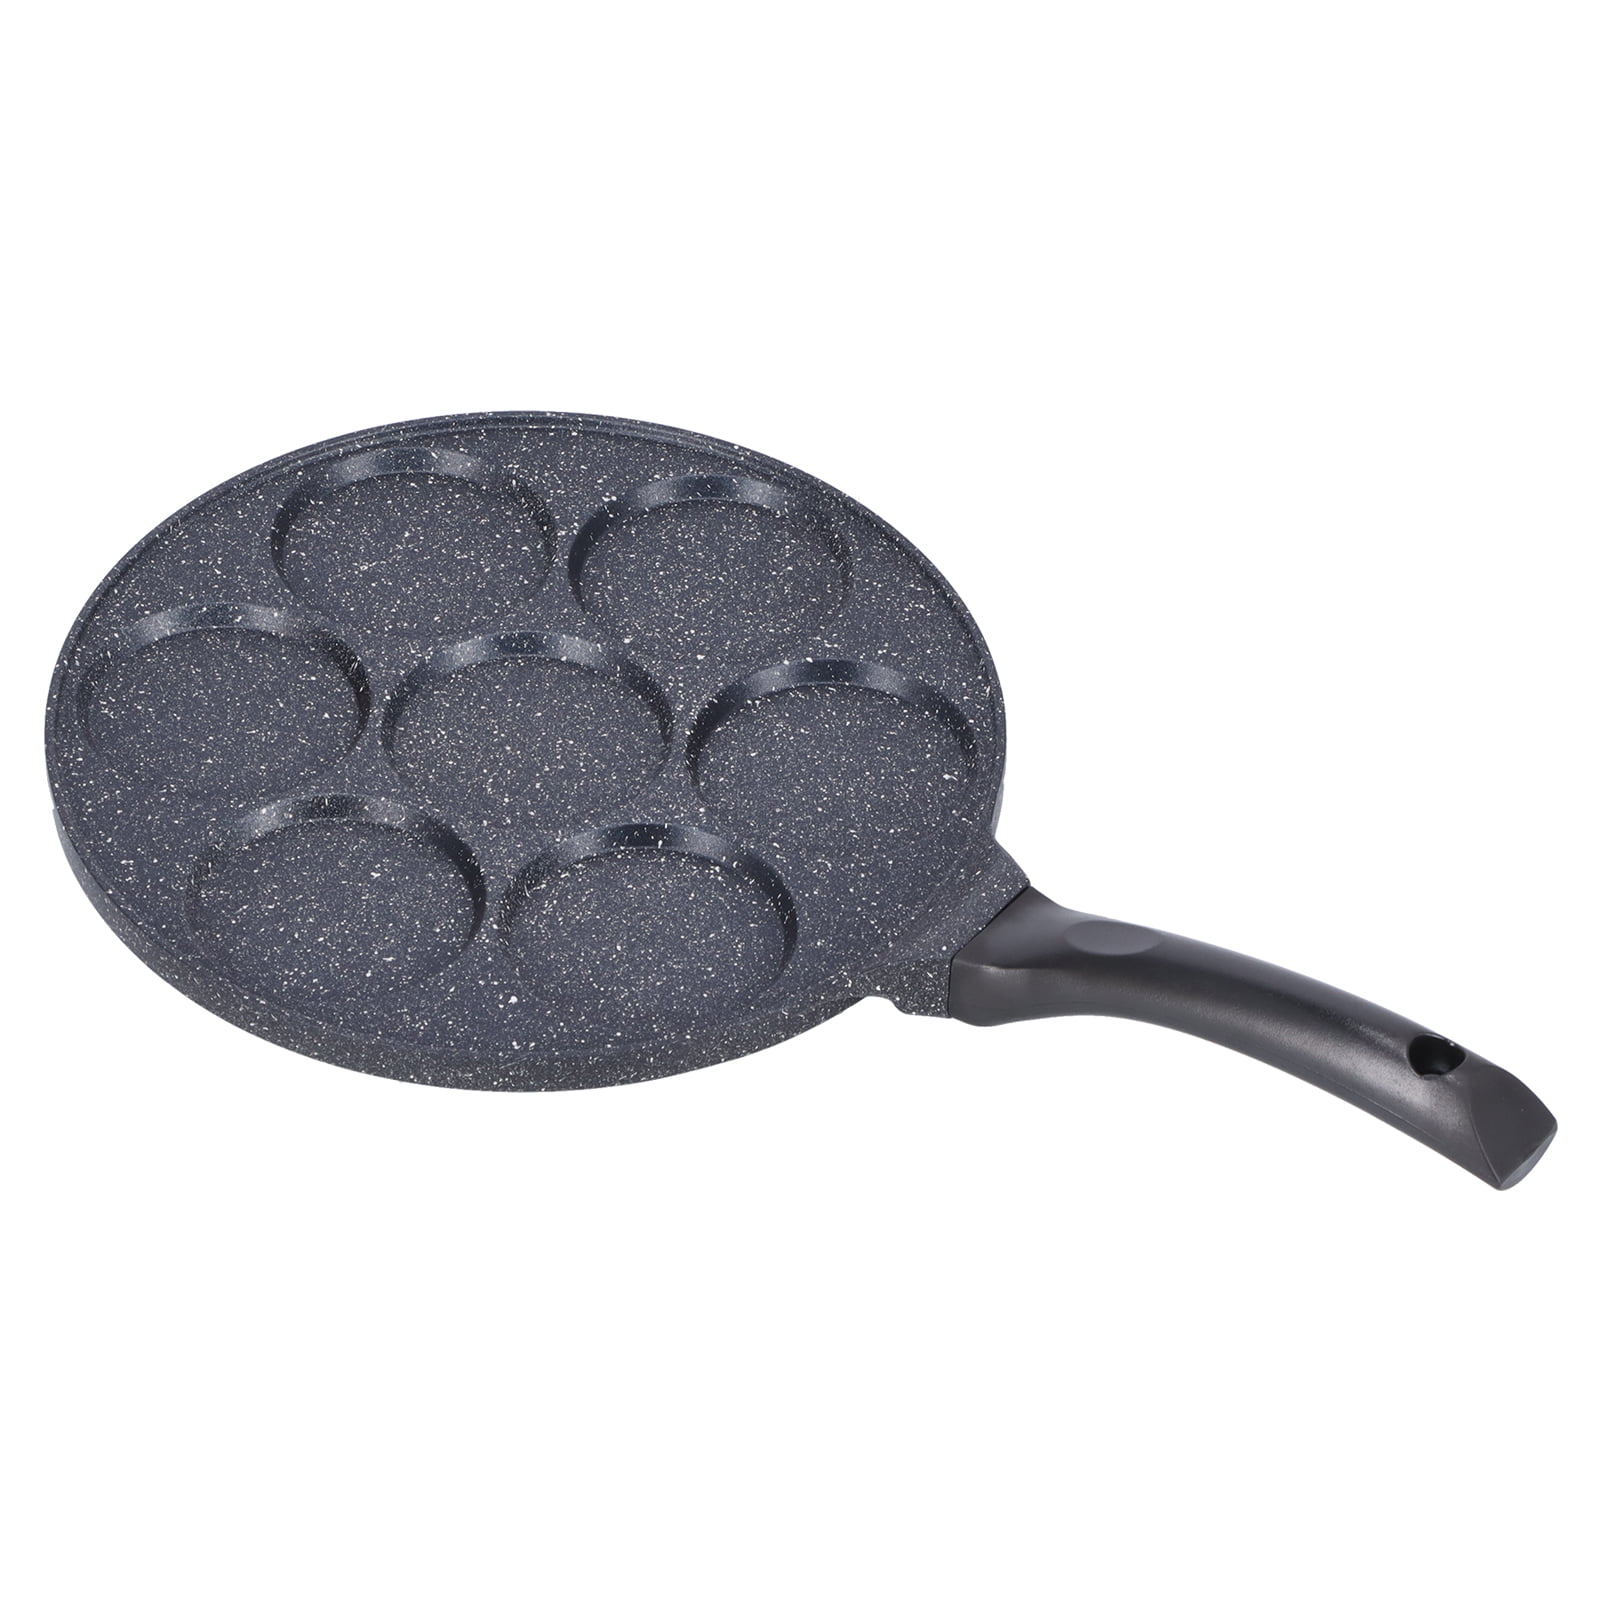 SENSARTE Crepe Pan, Dosa Tawa Griddle, Nonstick 10-Inch Pancake Pan Granite Coating, Gray